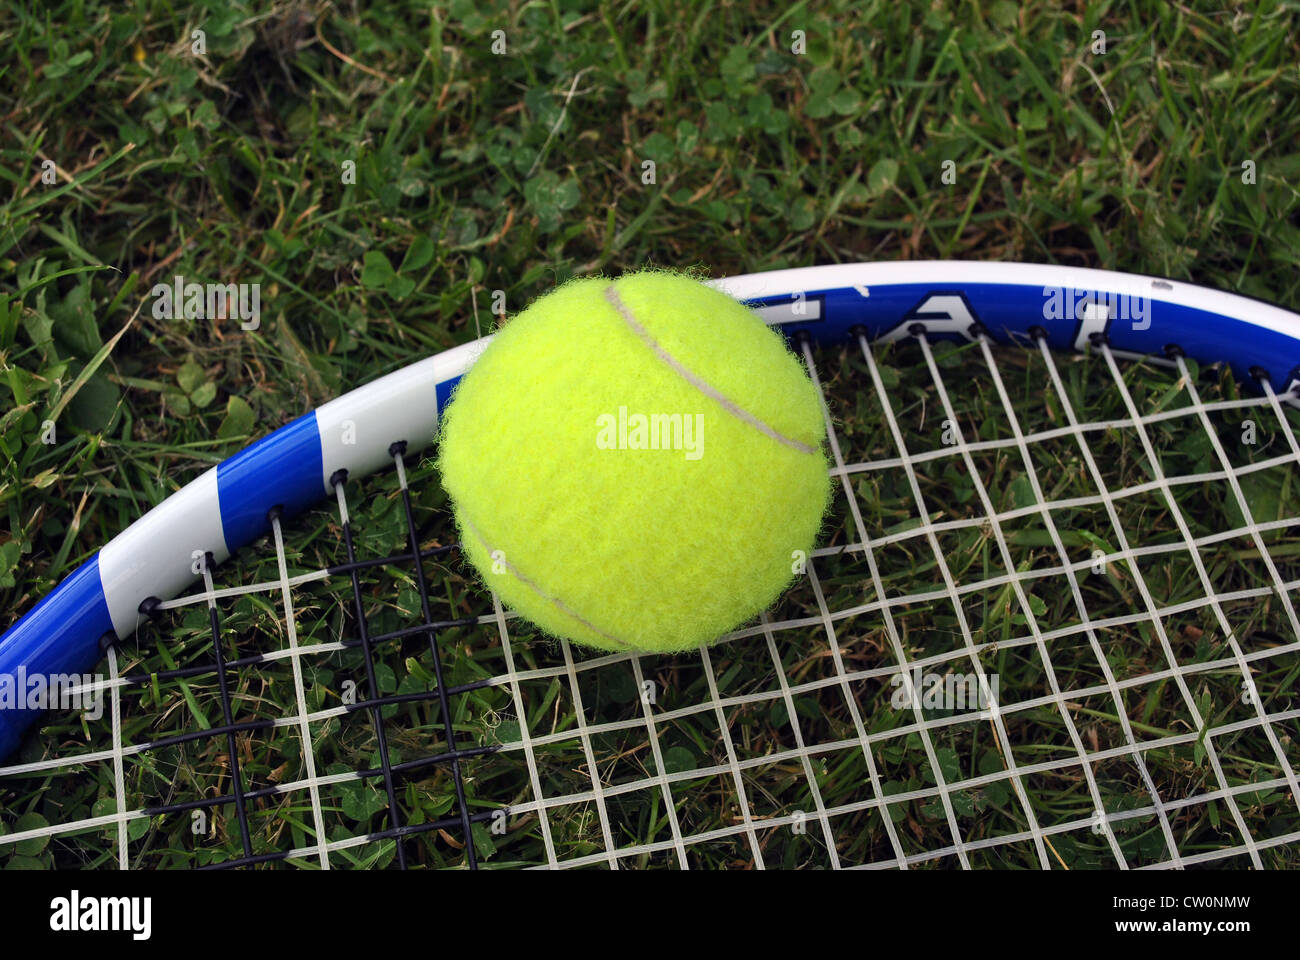 Balle de tennis raquette de tennis sur un court de tennis Banque D'Images